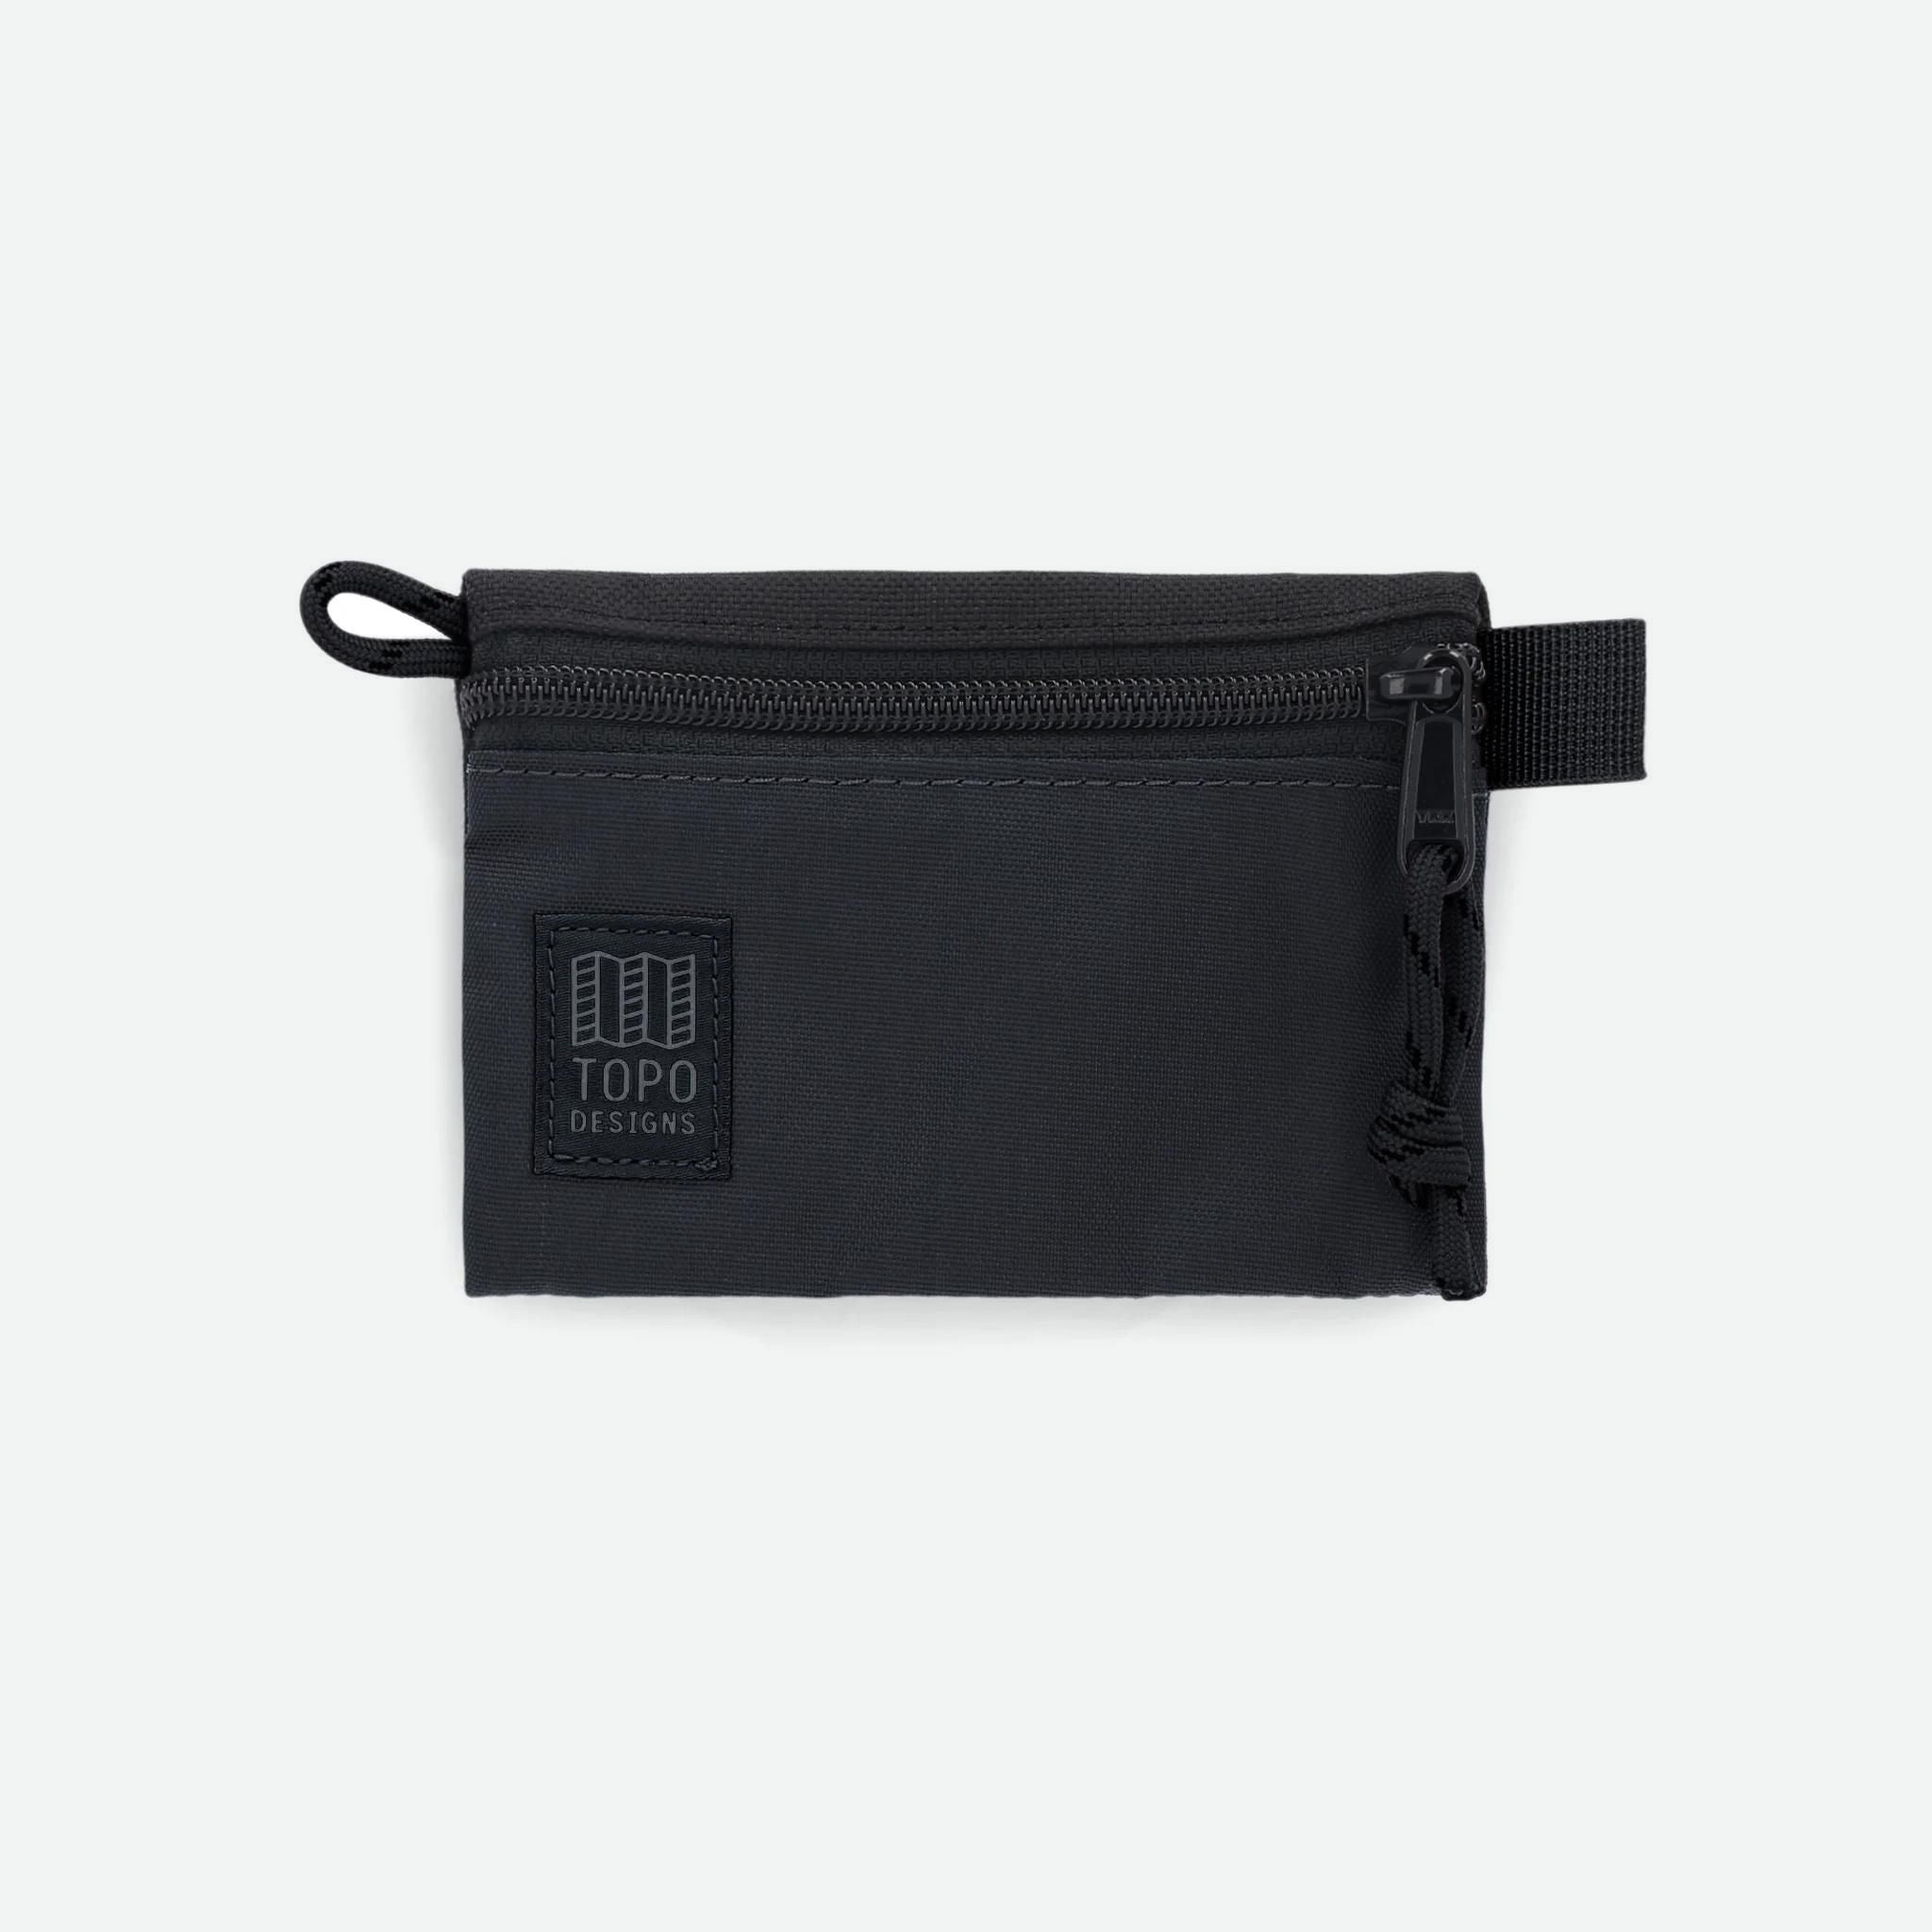 Topo Designs Accessory Bag Micro Black/Black